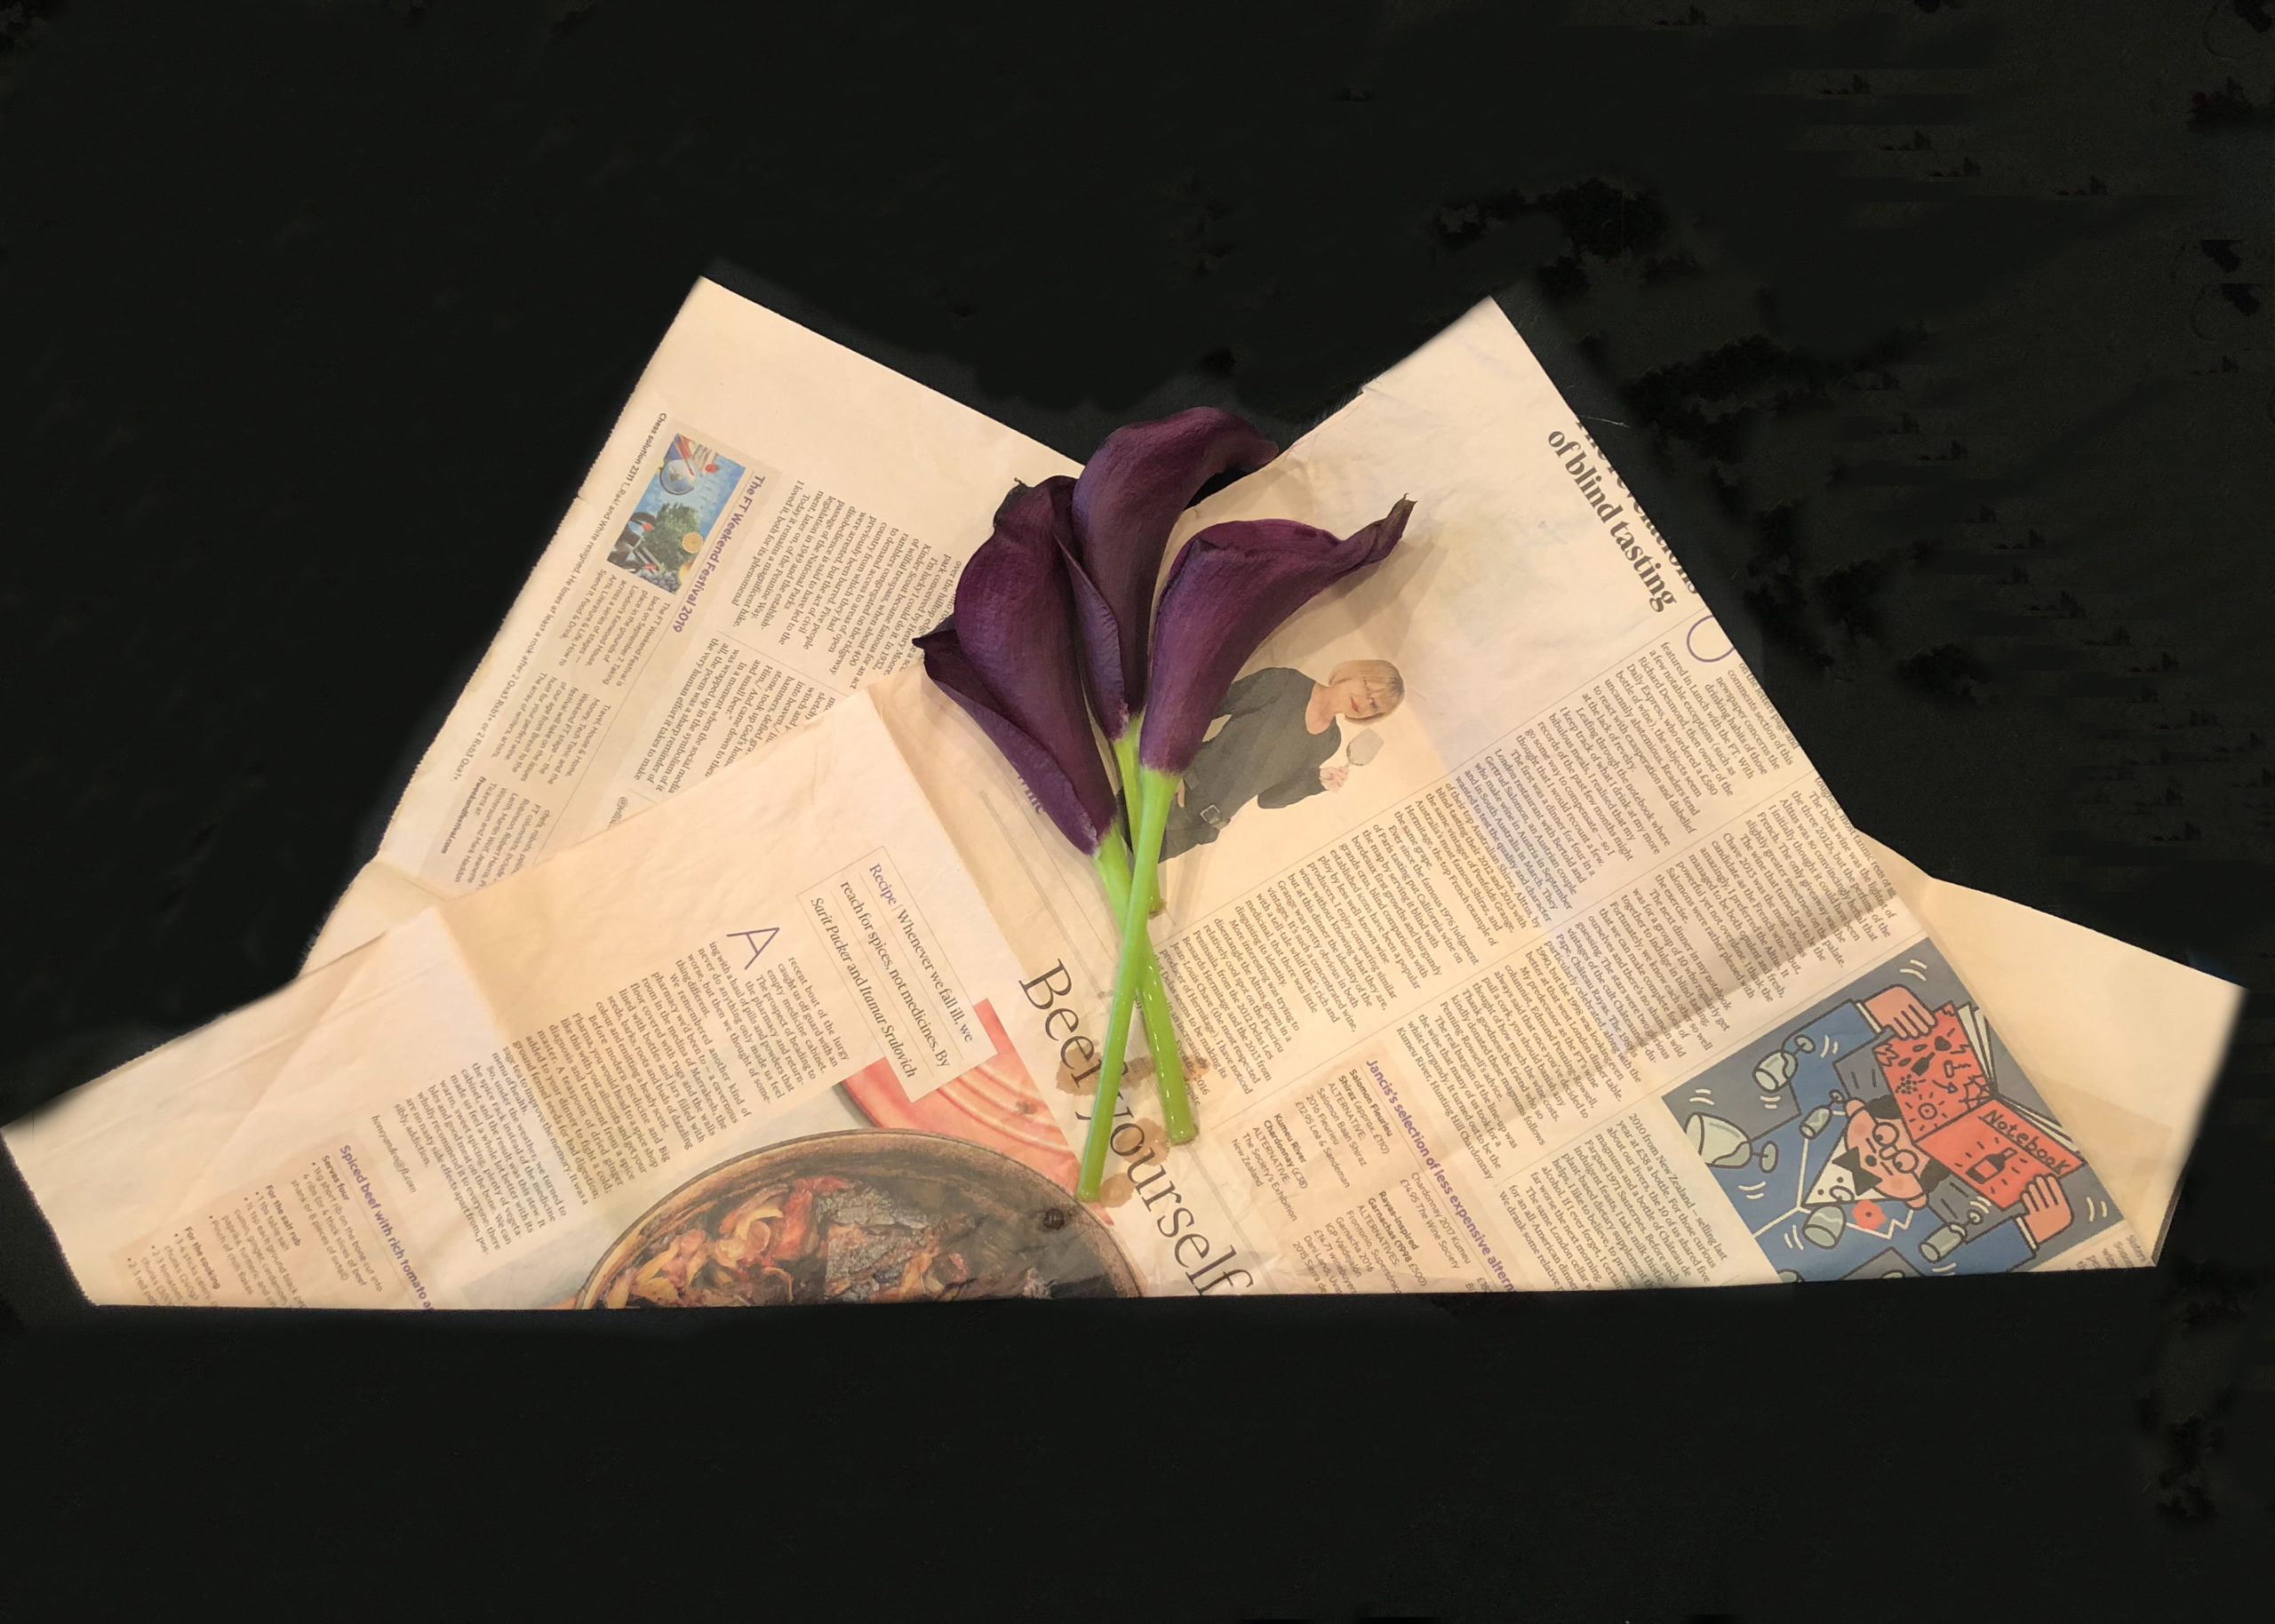 包装紙の上に枯れた花を置いて撮影した画像